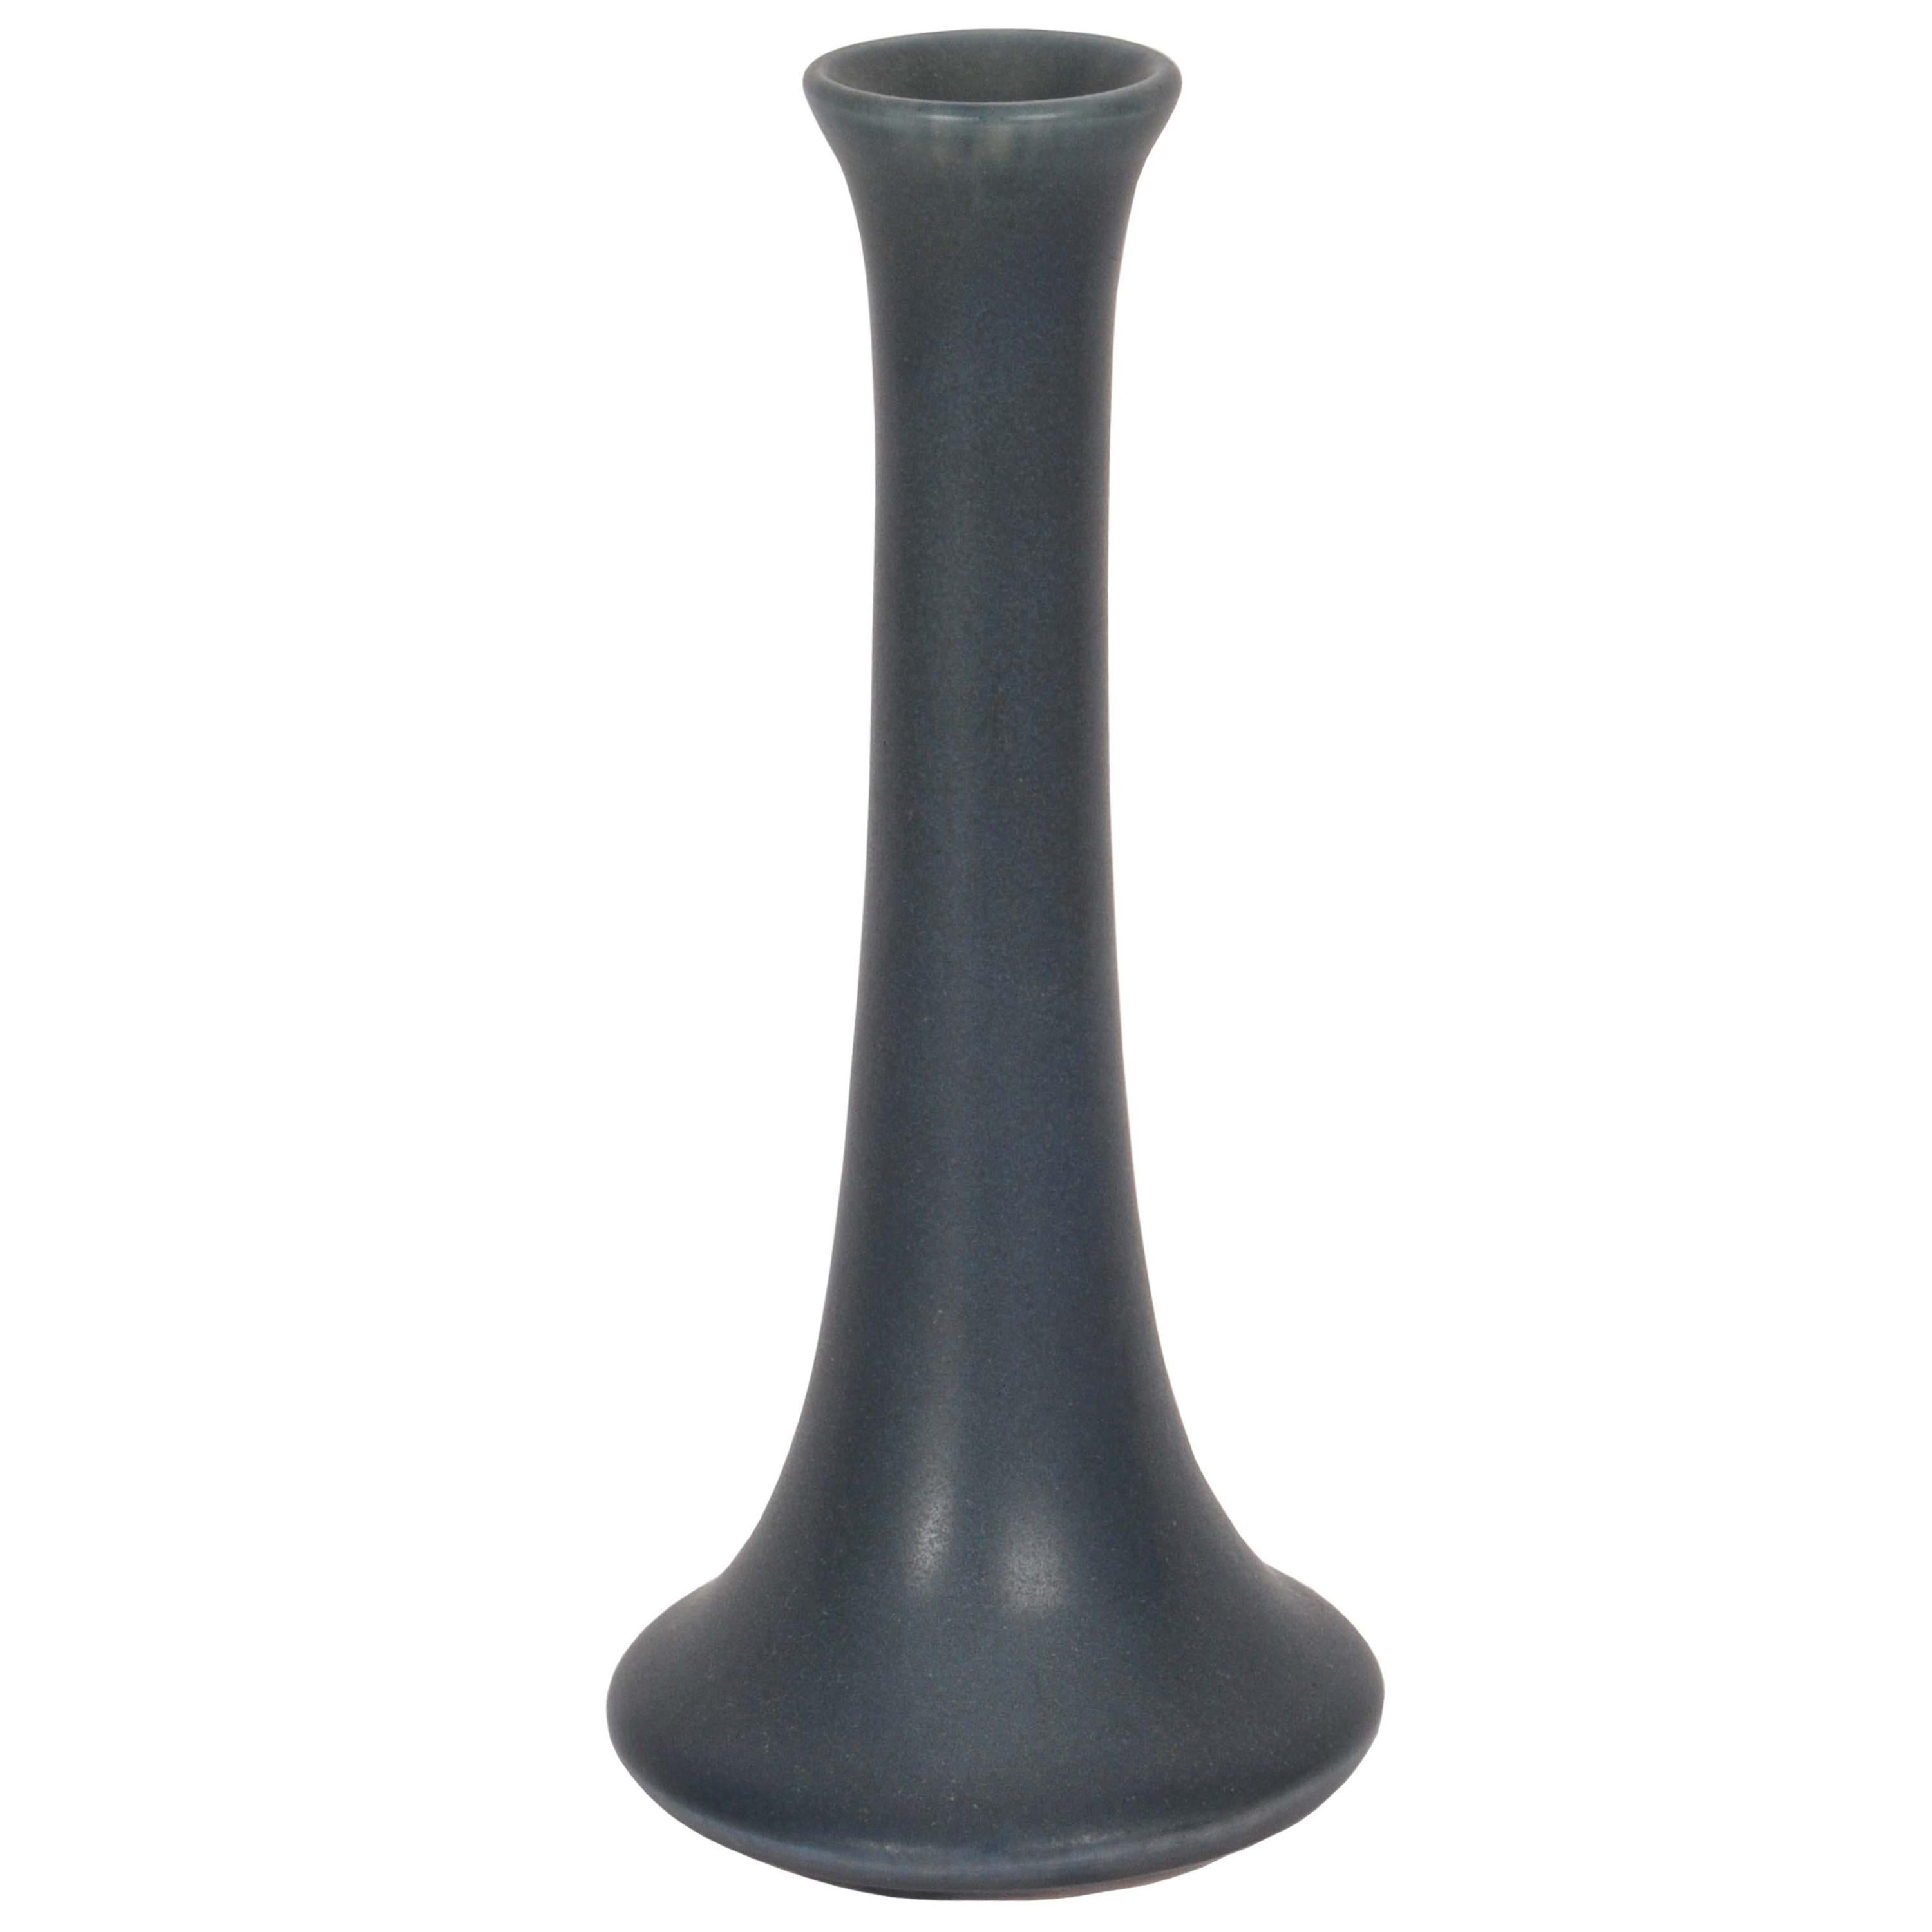 Un bon vase ancien en poterie américaine Arts and Crafts de Rookwood Pottery Co, daté de 1917.
Le vase a une glaçure mate de couleur anthracite avec des nuances de vert et de bleu, le vase a une forme étroite et effilée avec un pied évasé, marqué à